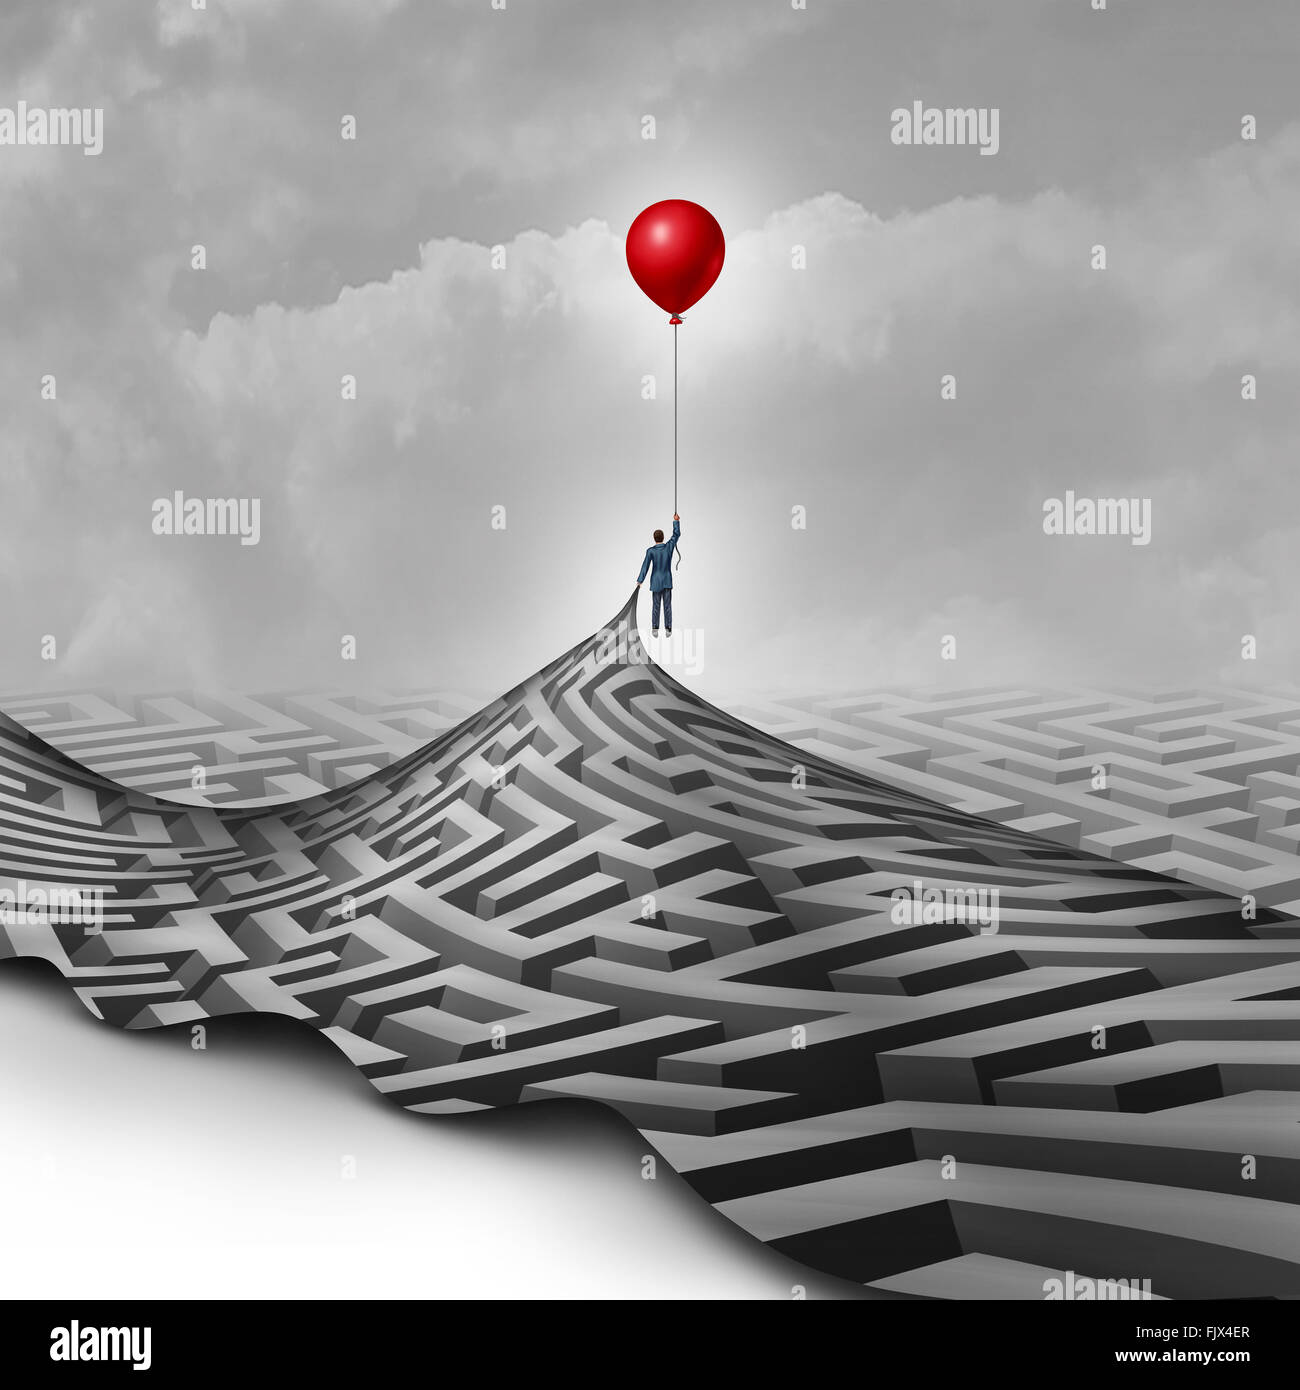 Geschäftsmann Erfolgskonzept als Metapher zur Überwindung von Hindernissen als Person heben einen Irrgarten oder Labyrinth mit einem roten Ballon als ein Symbol für die Vision und die Suche nach einem Weg zum Erfolg. Stockfoto